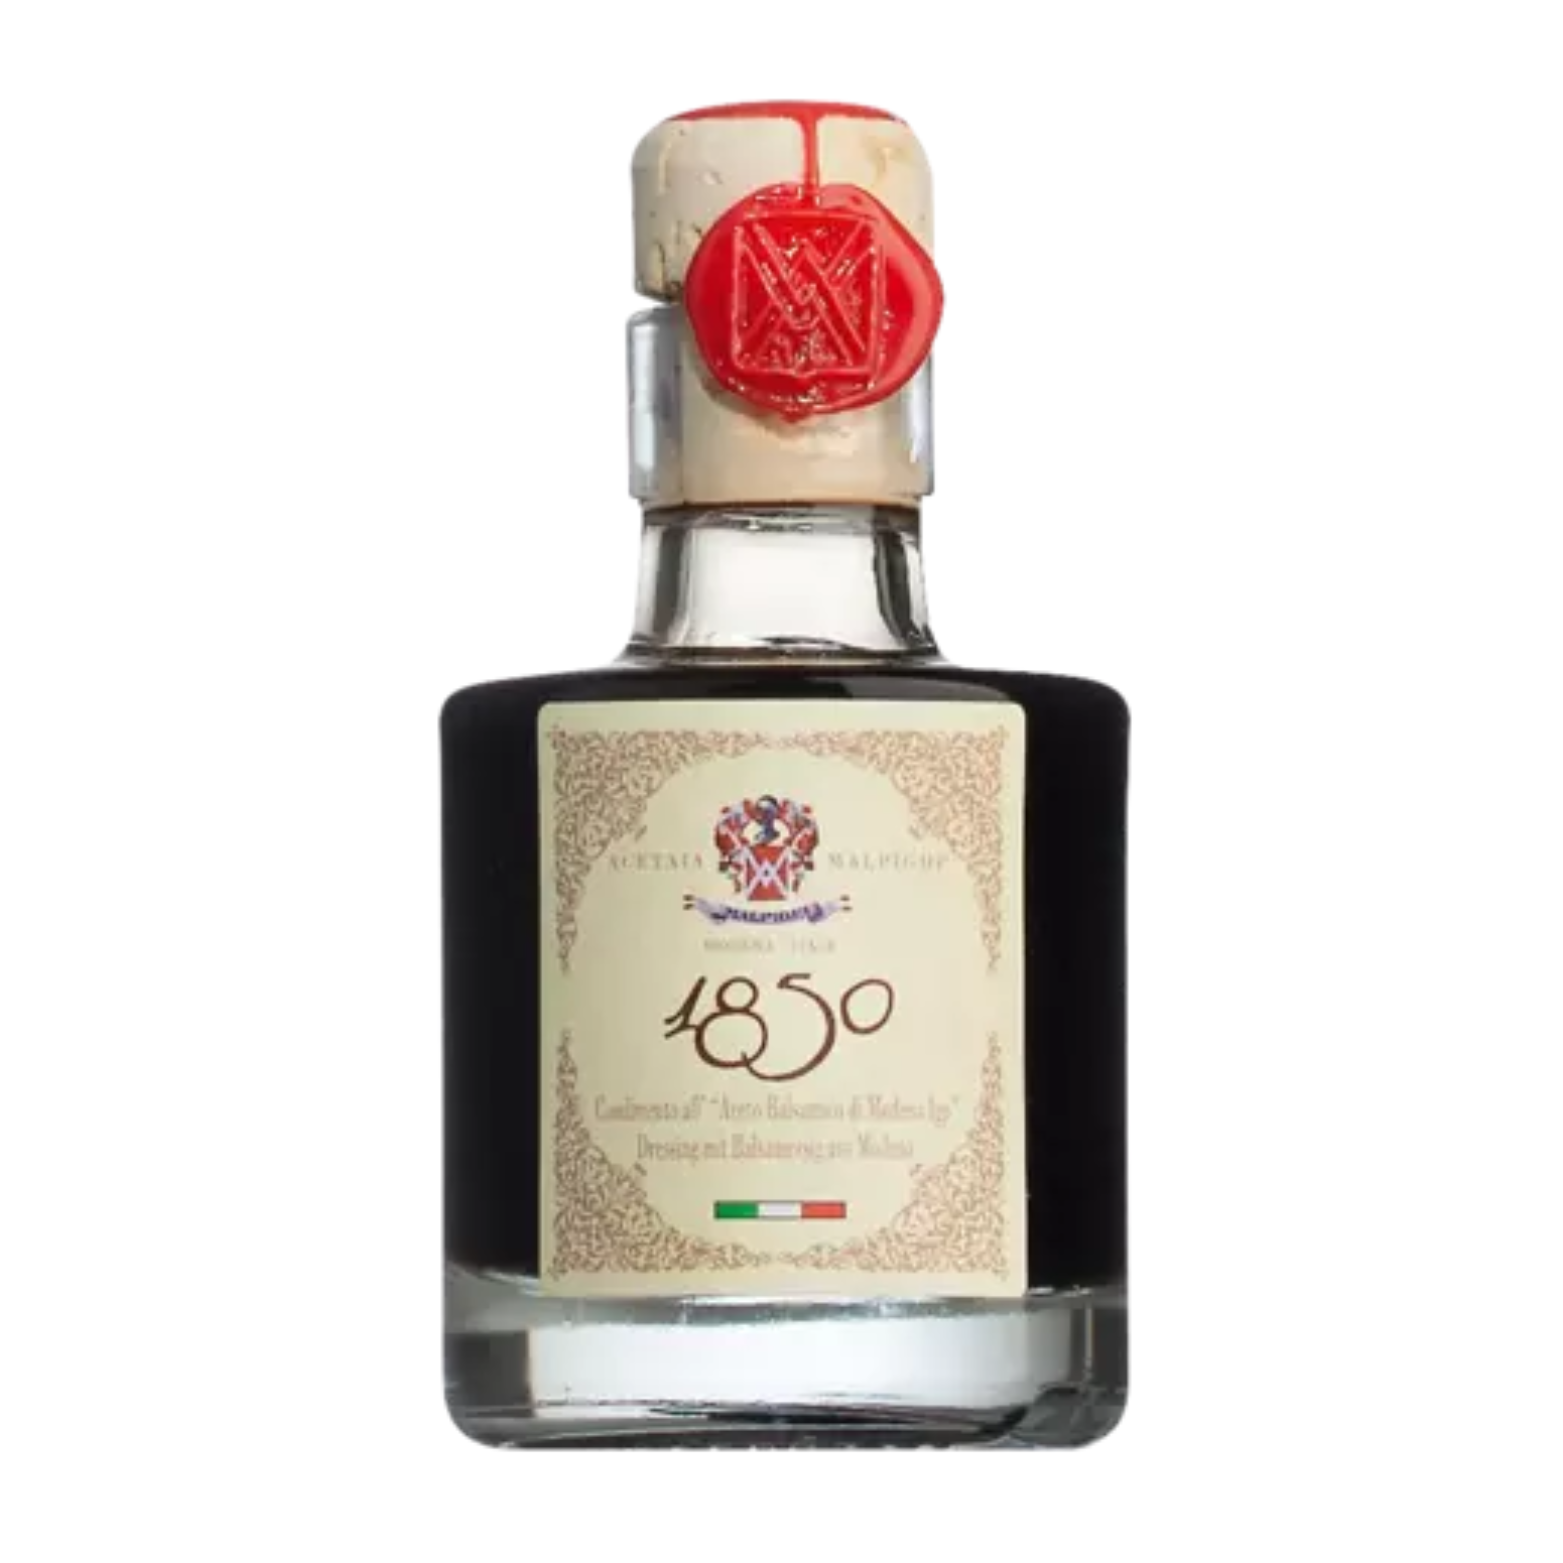 1850 Condimento all’aceto Balsamico di Modena IGP – 50 ml